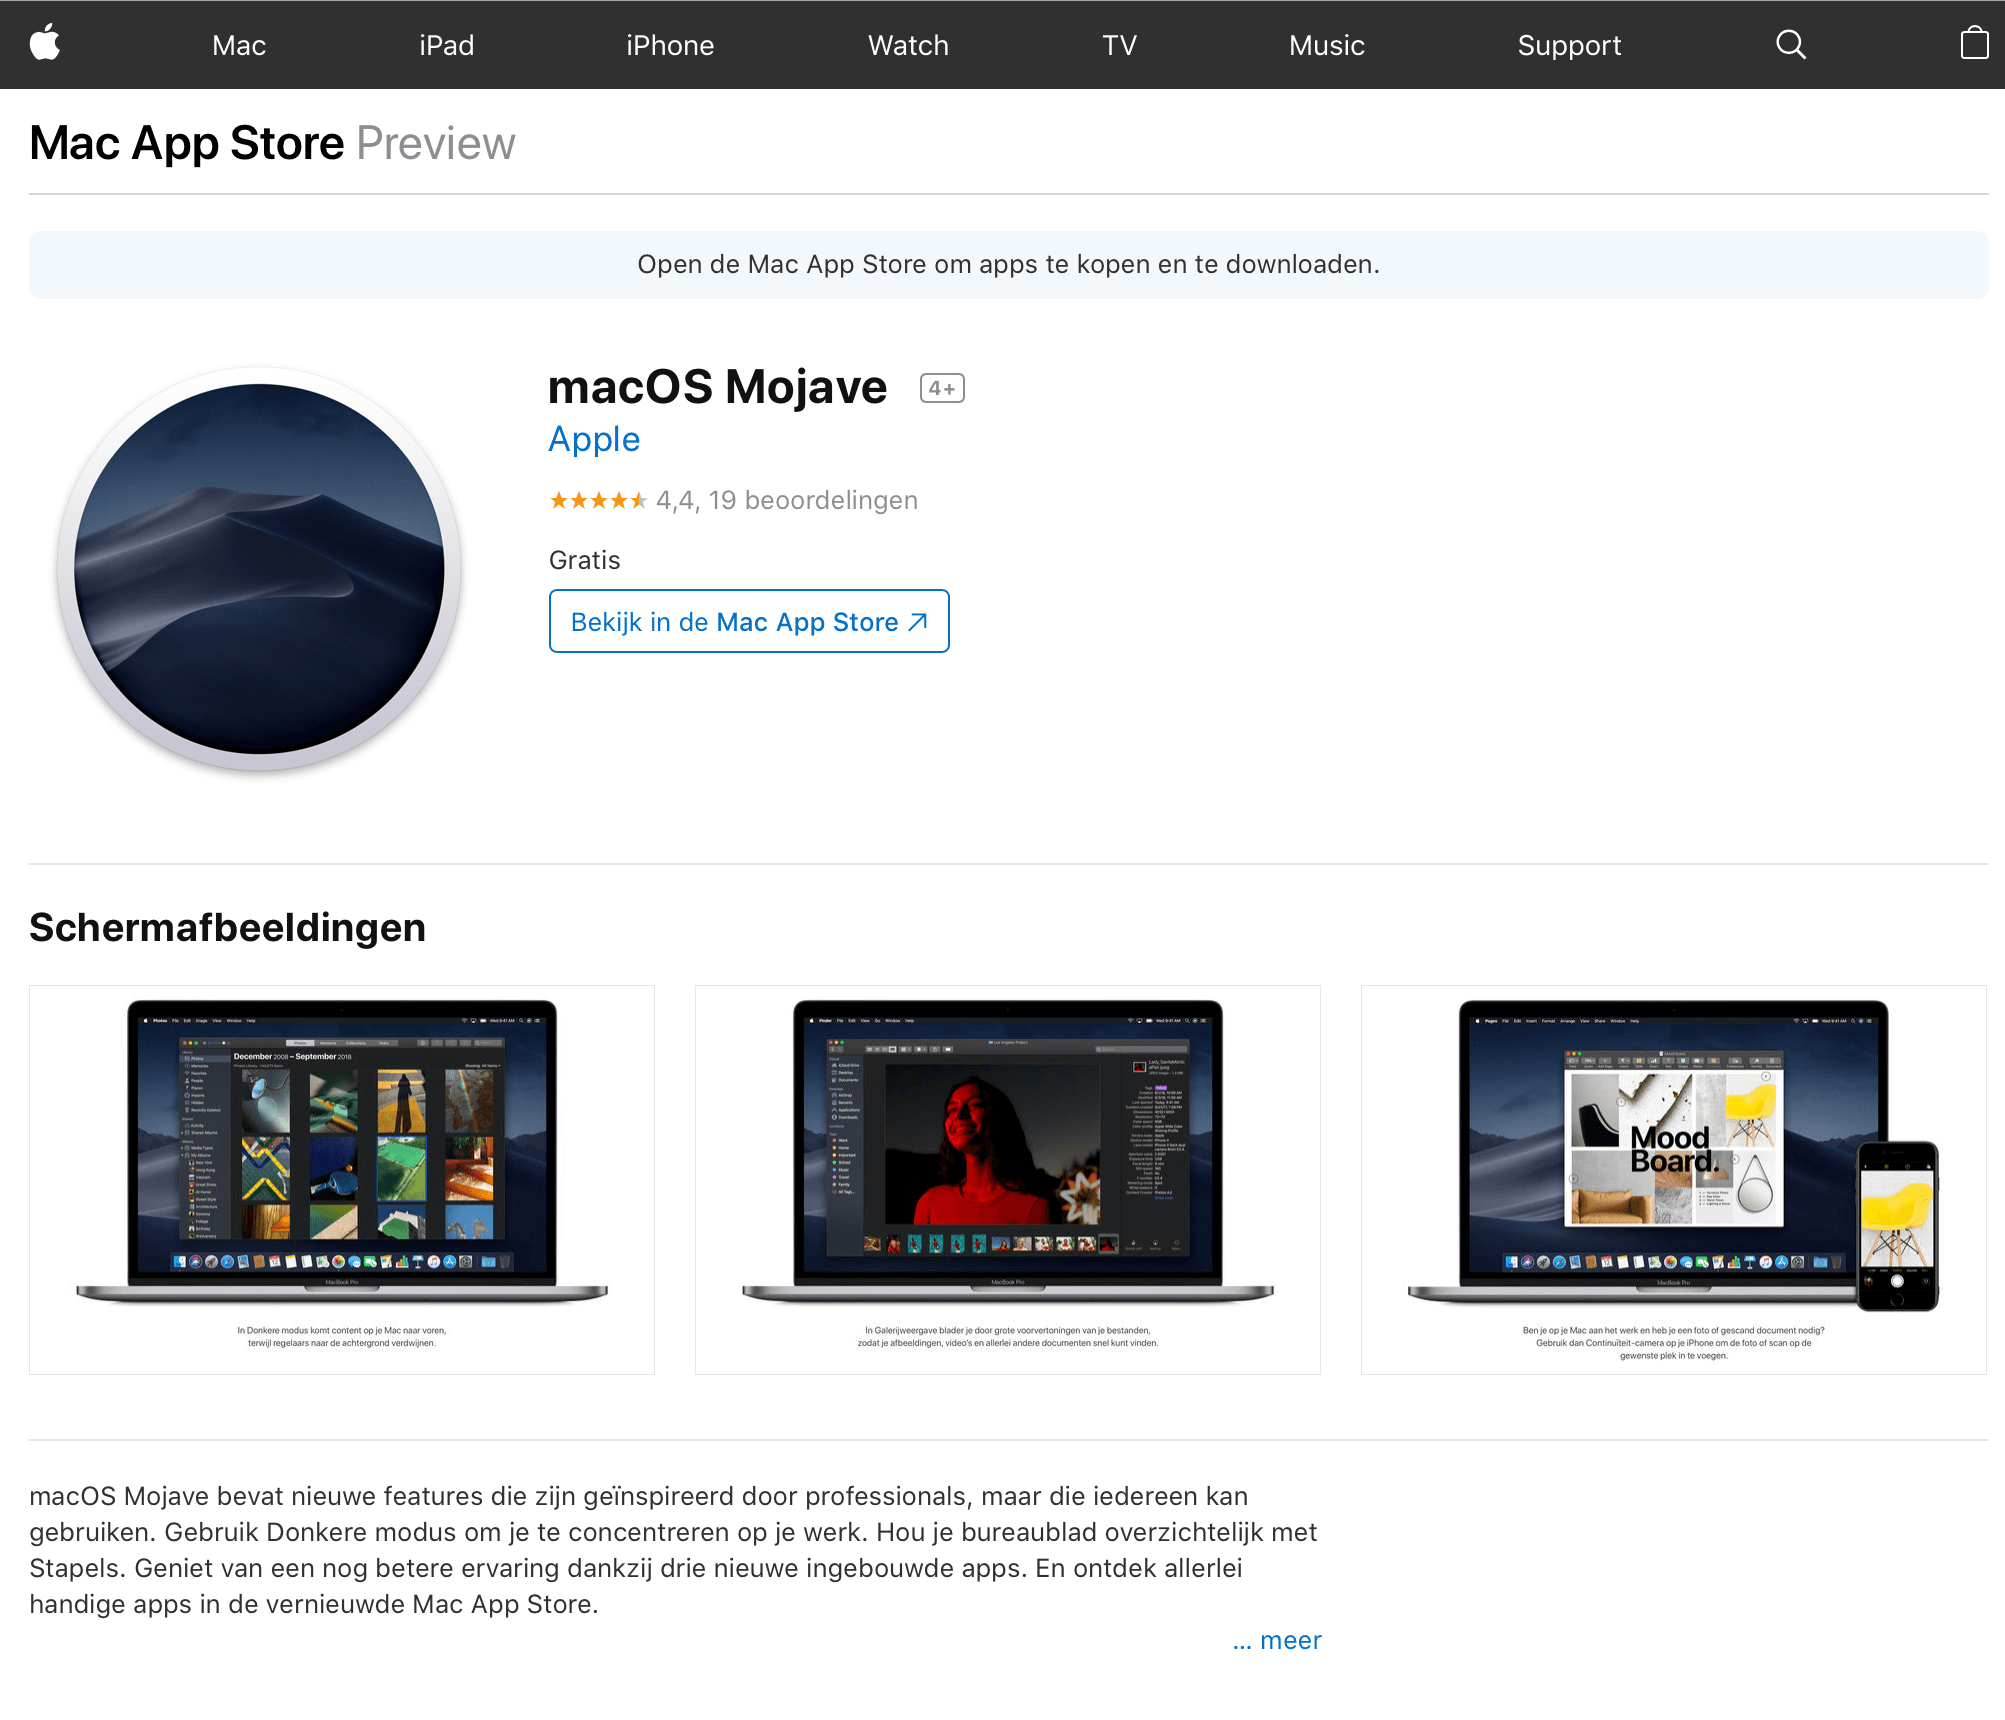 Webpagina in Safari die de tekst "Gratis" toont bij de prijs van macOS Mojave